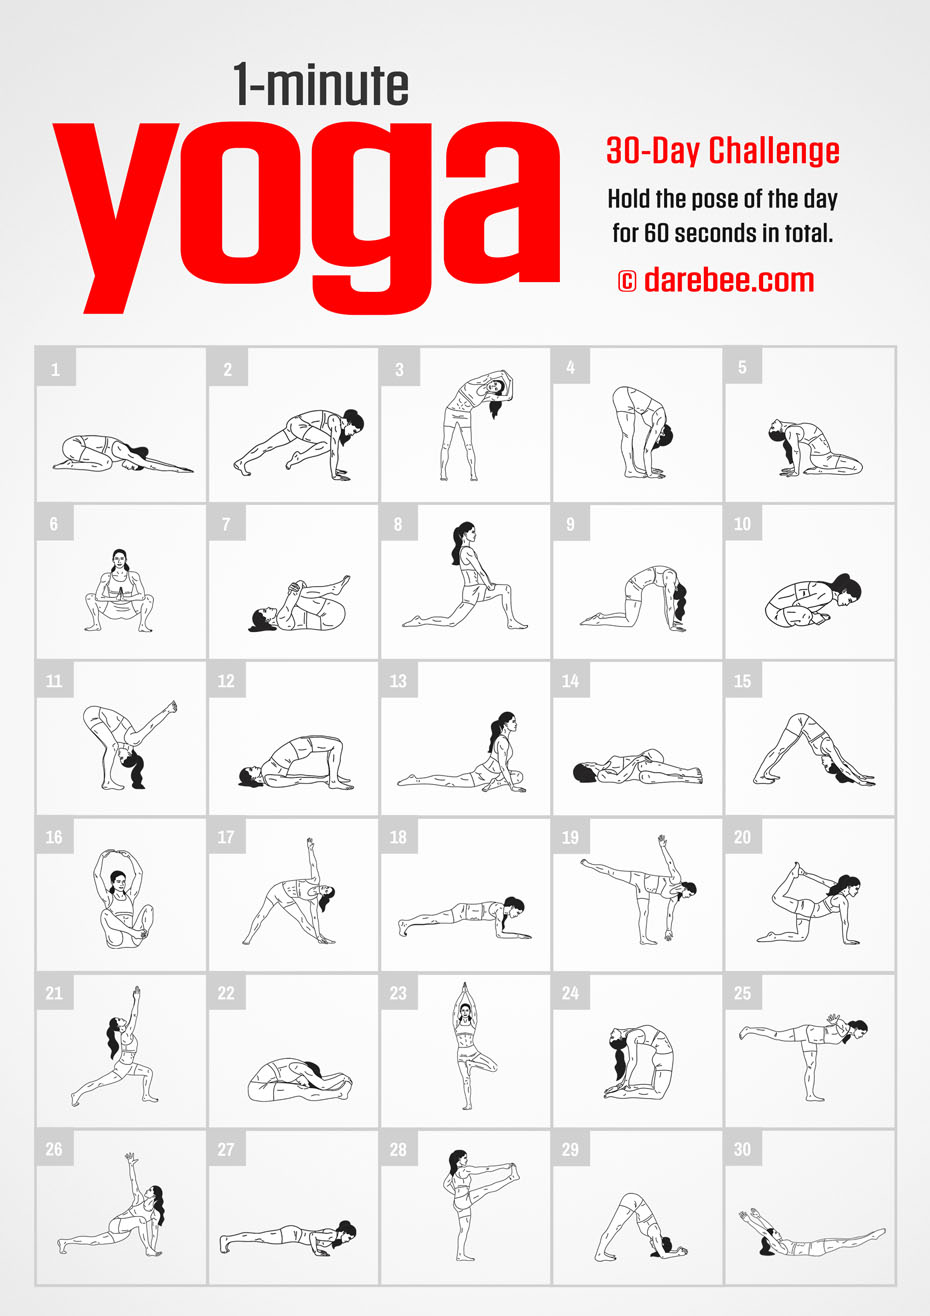 https://darebee.com/images/challenges/1minute-yoga-challenge.jpg